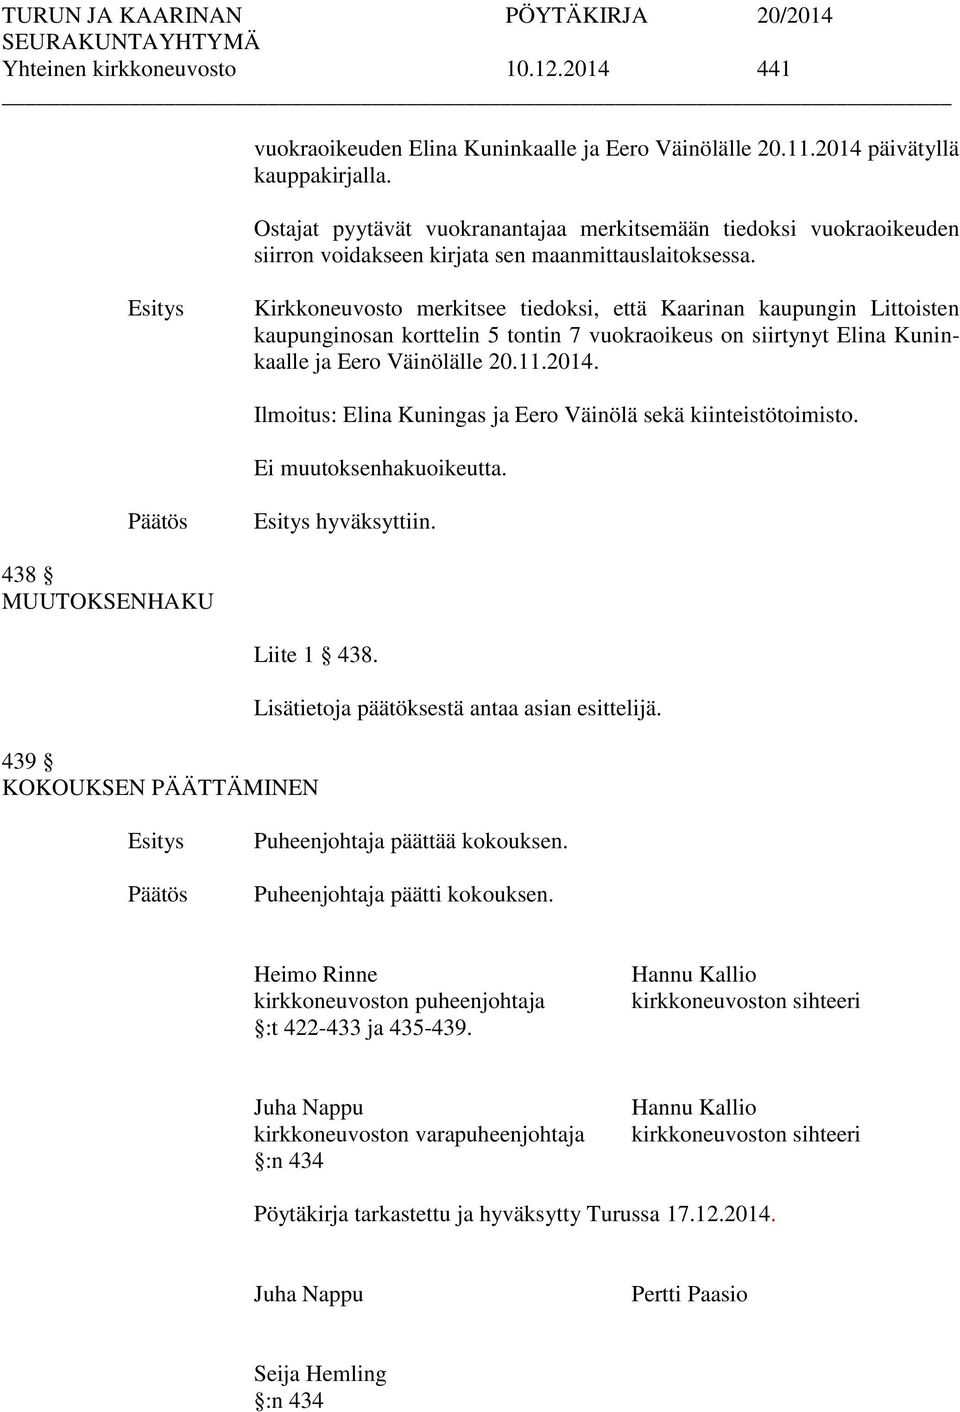 Kirkkoneuvosto merkitsee tiedoksi, että Kaarinan kaupungin Littoisten kaupunginosan korttelin 5 tontin 7 vuokraoikeus on siirtynyt Elina Kuninkaalle ja Eero Väinölälle 20.11.2014.